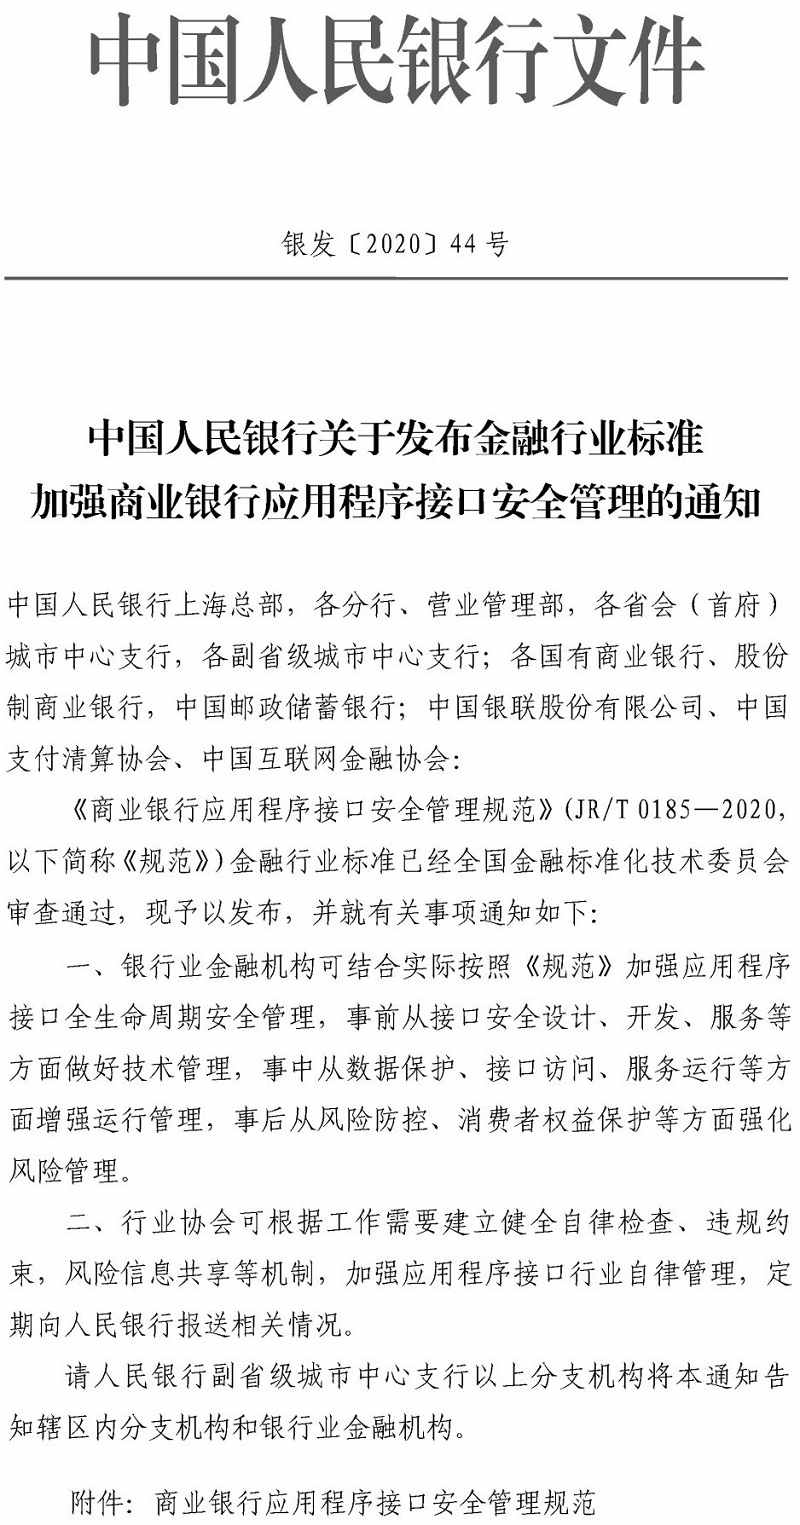 银发〔2020〕44号《中国人民银行关于发布金融行业标准加强商业银行应用程序接口安全管理的通知》